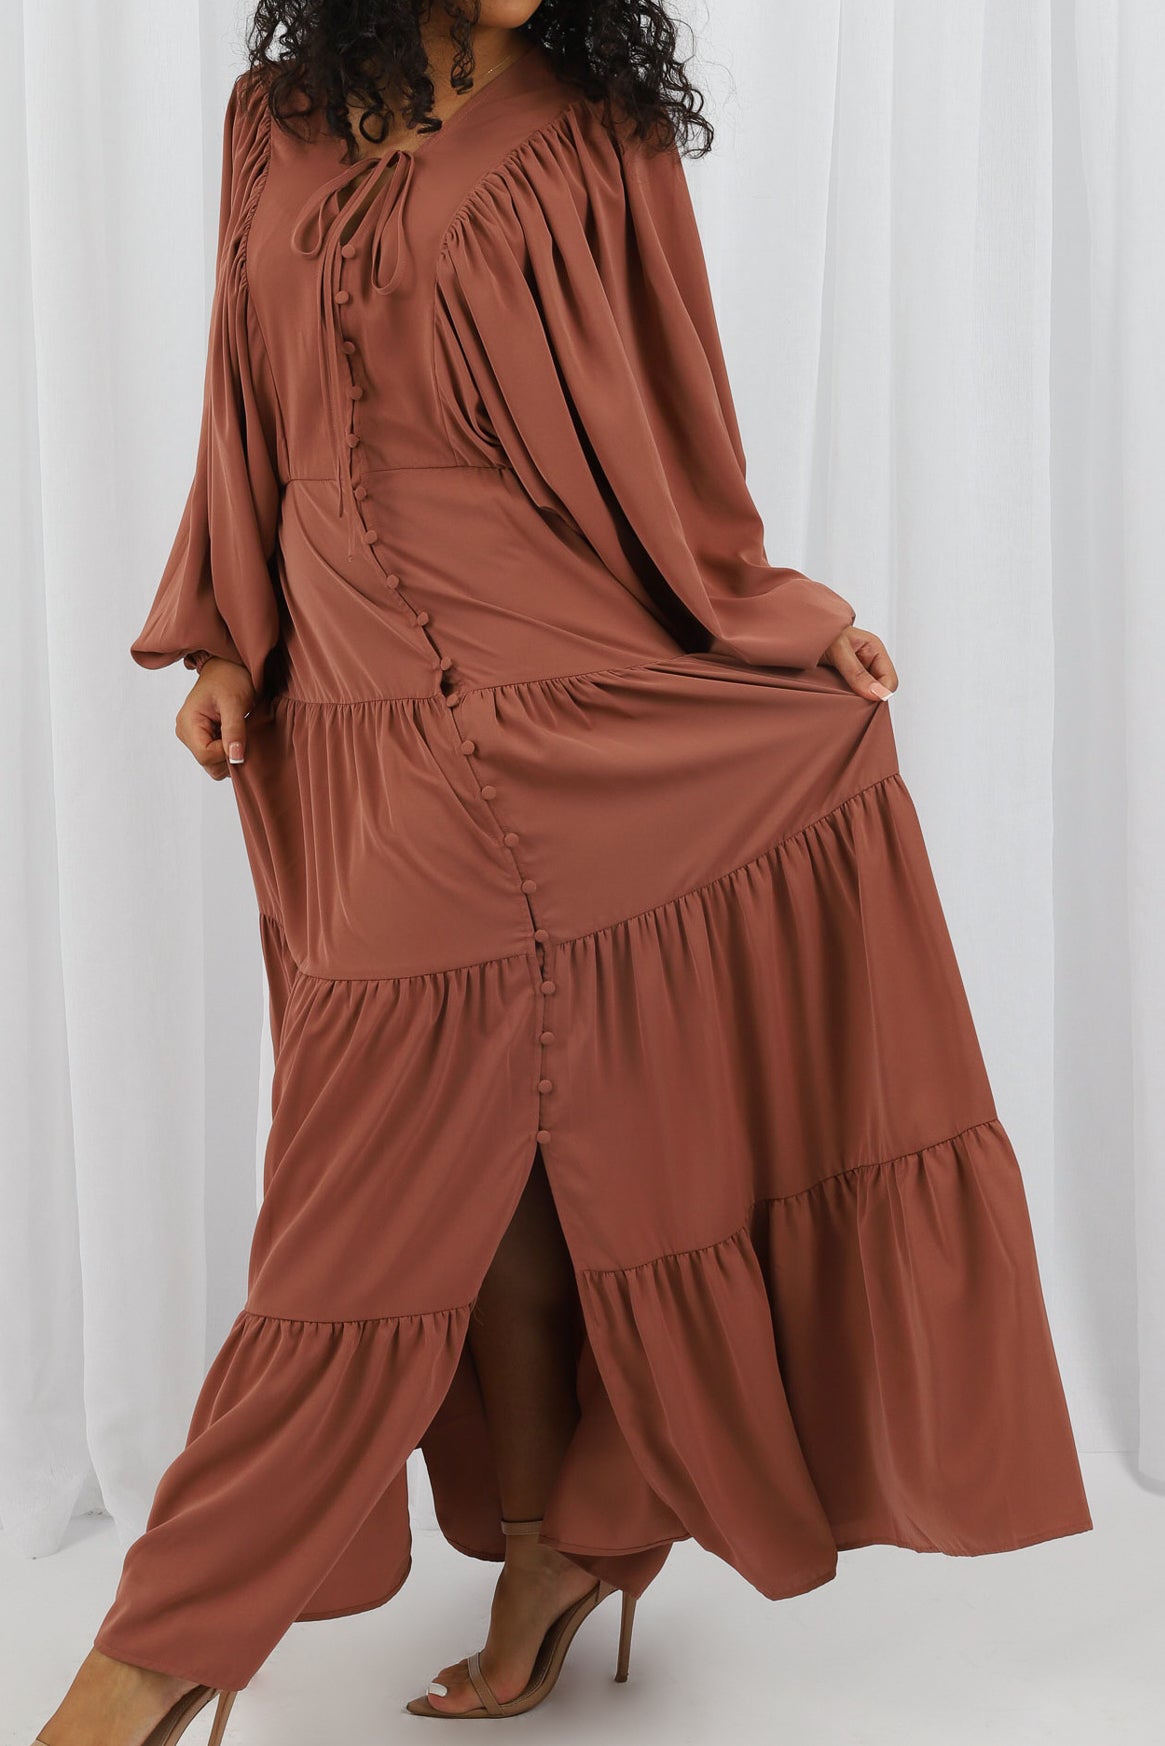 M7905Salmon-dress-abaya